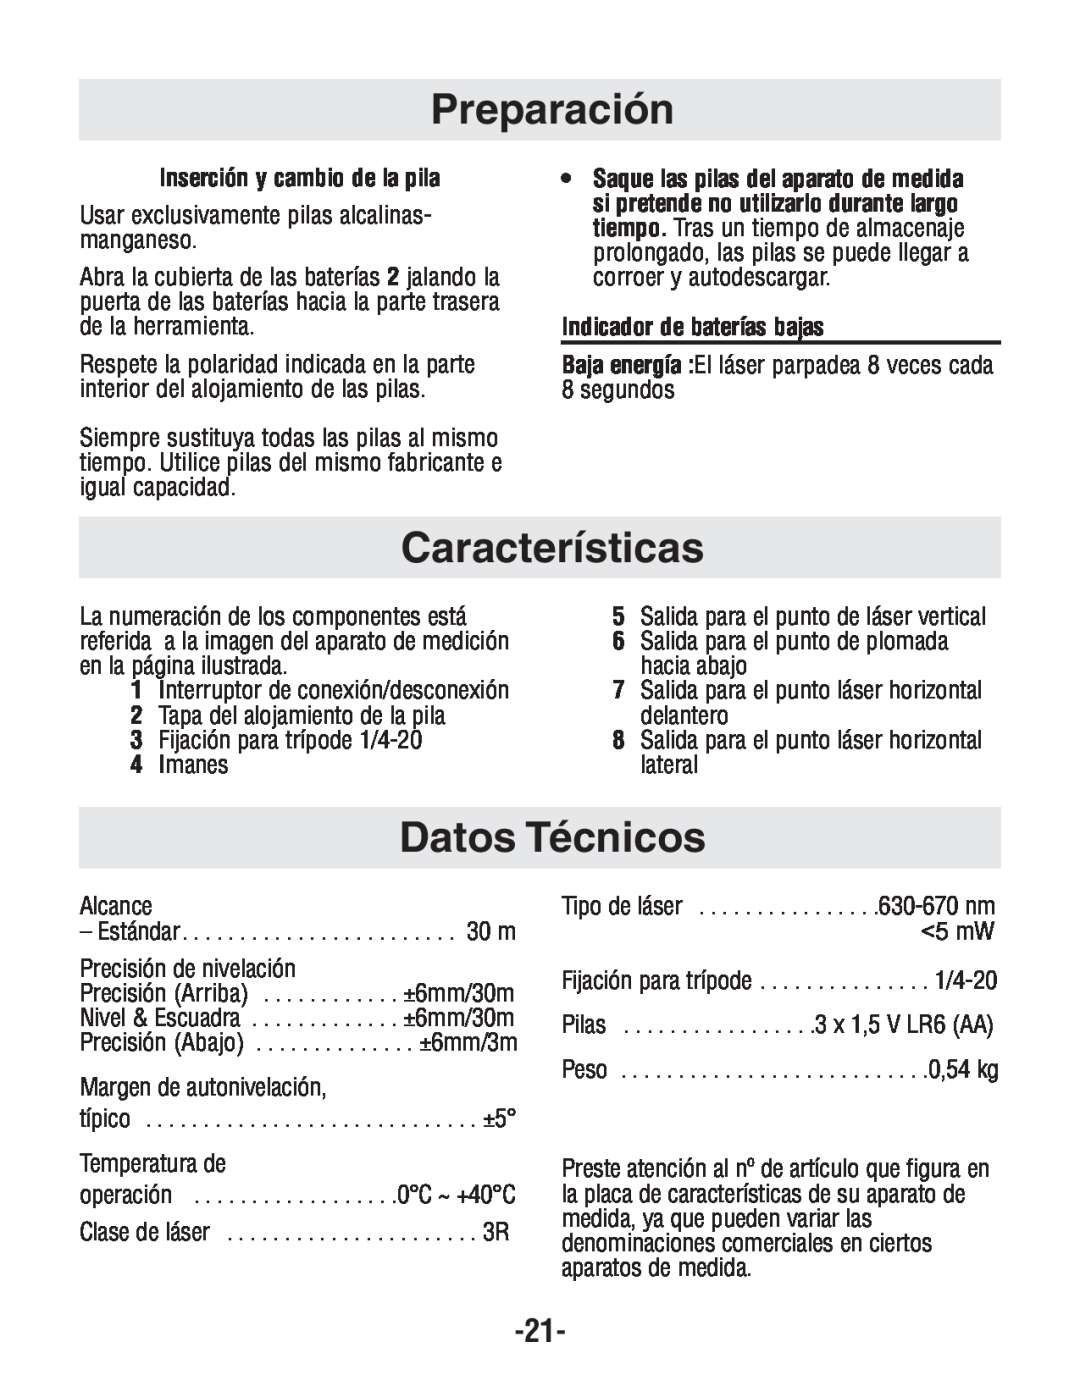 Bosch Power Tools GPL4 manual Preparación, Características, Datos Técnicos, Inserción y cambio de la pila 